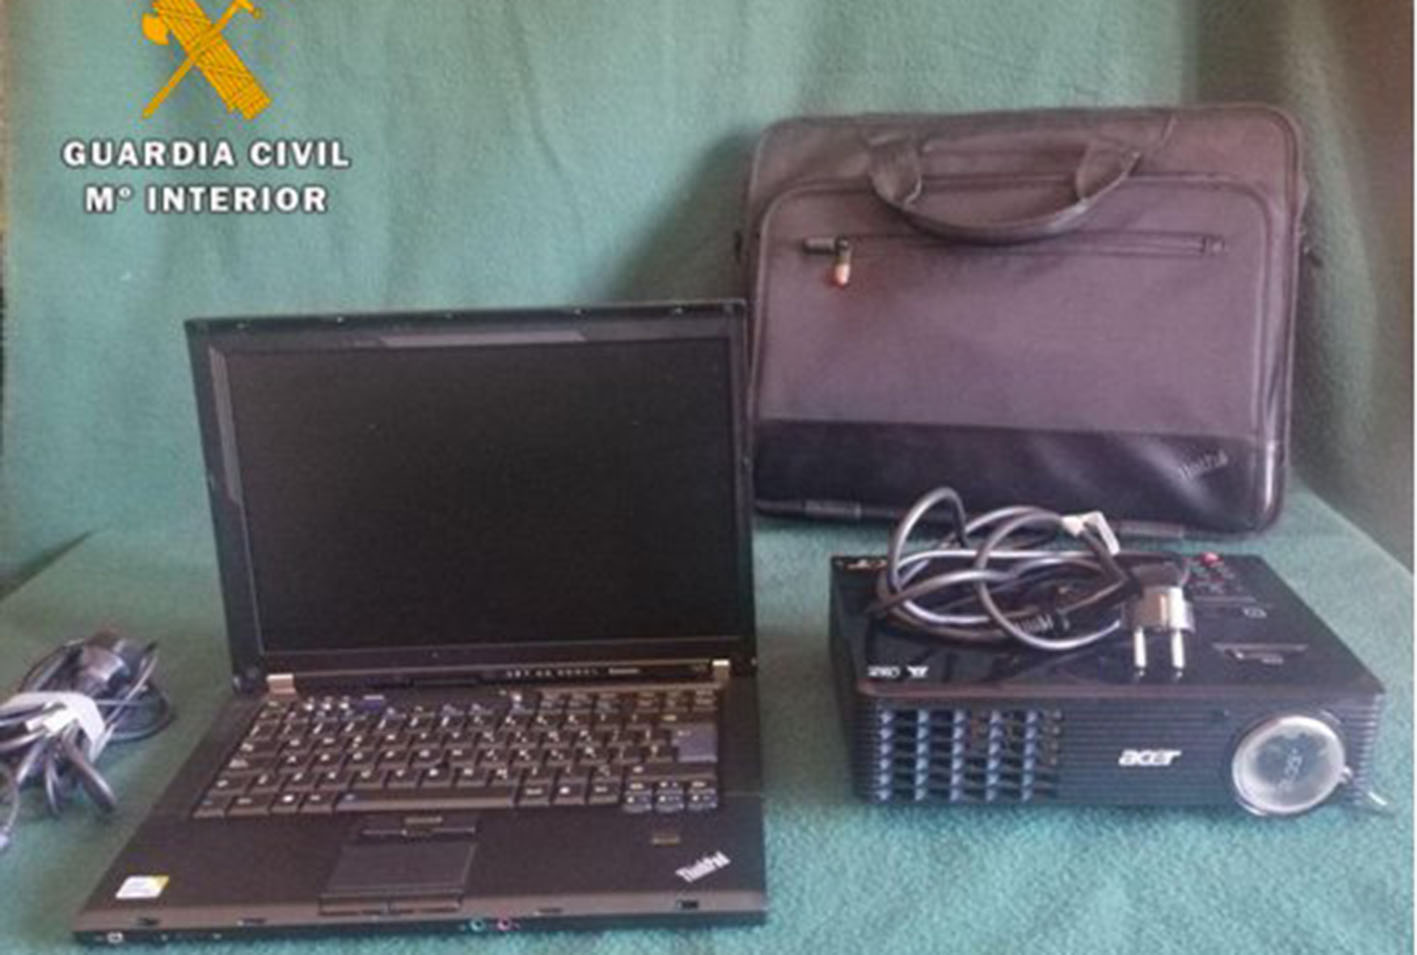 El ordenador y el proyector robados han sido recuperados por la Guardia Civil.